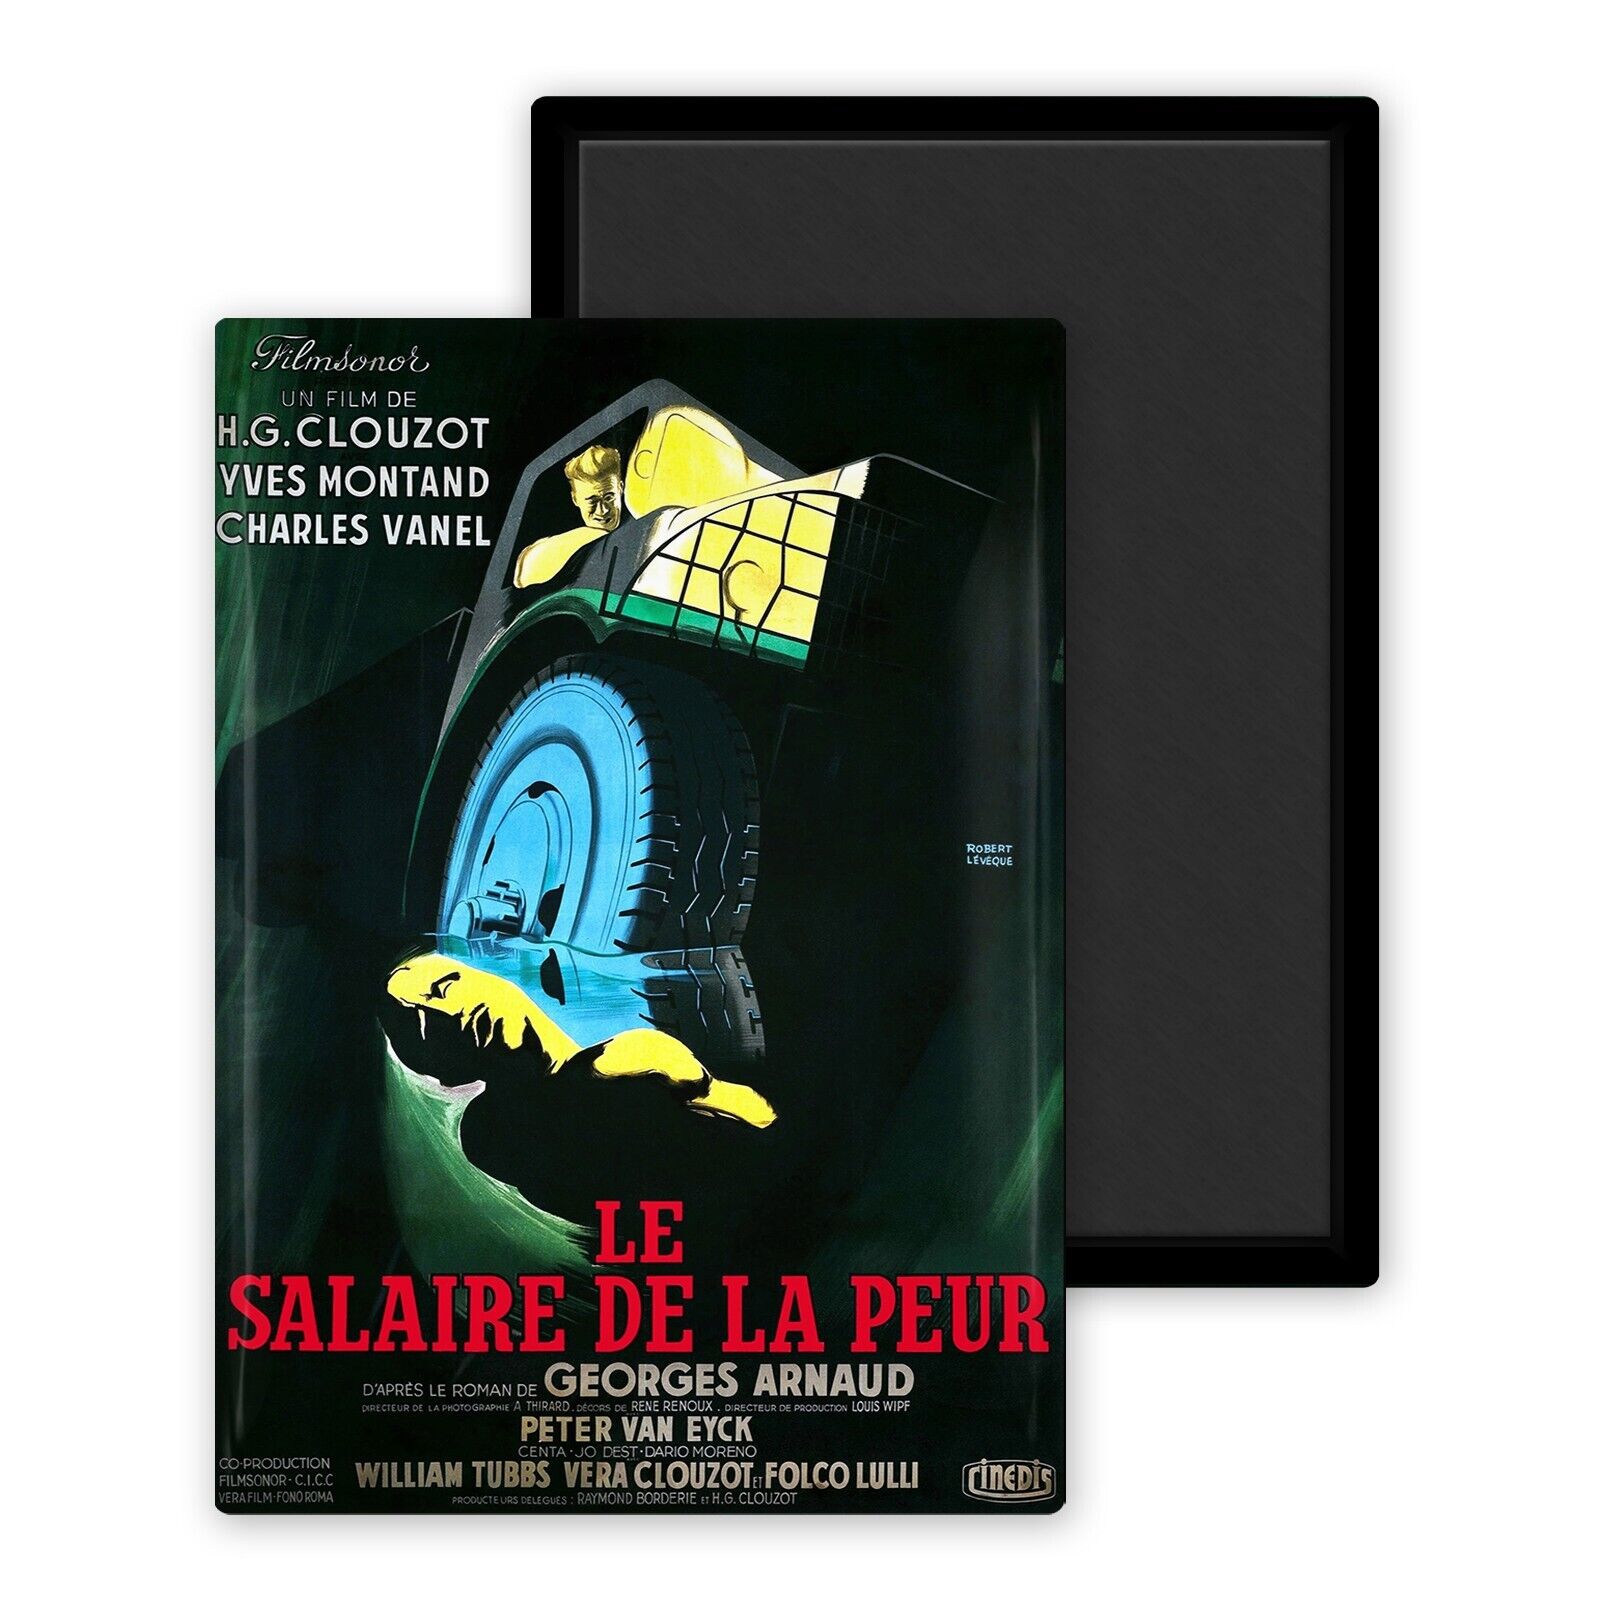 1953 Le Salaire de la fear version 1-magnet frigo 54x78mm